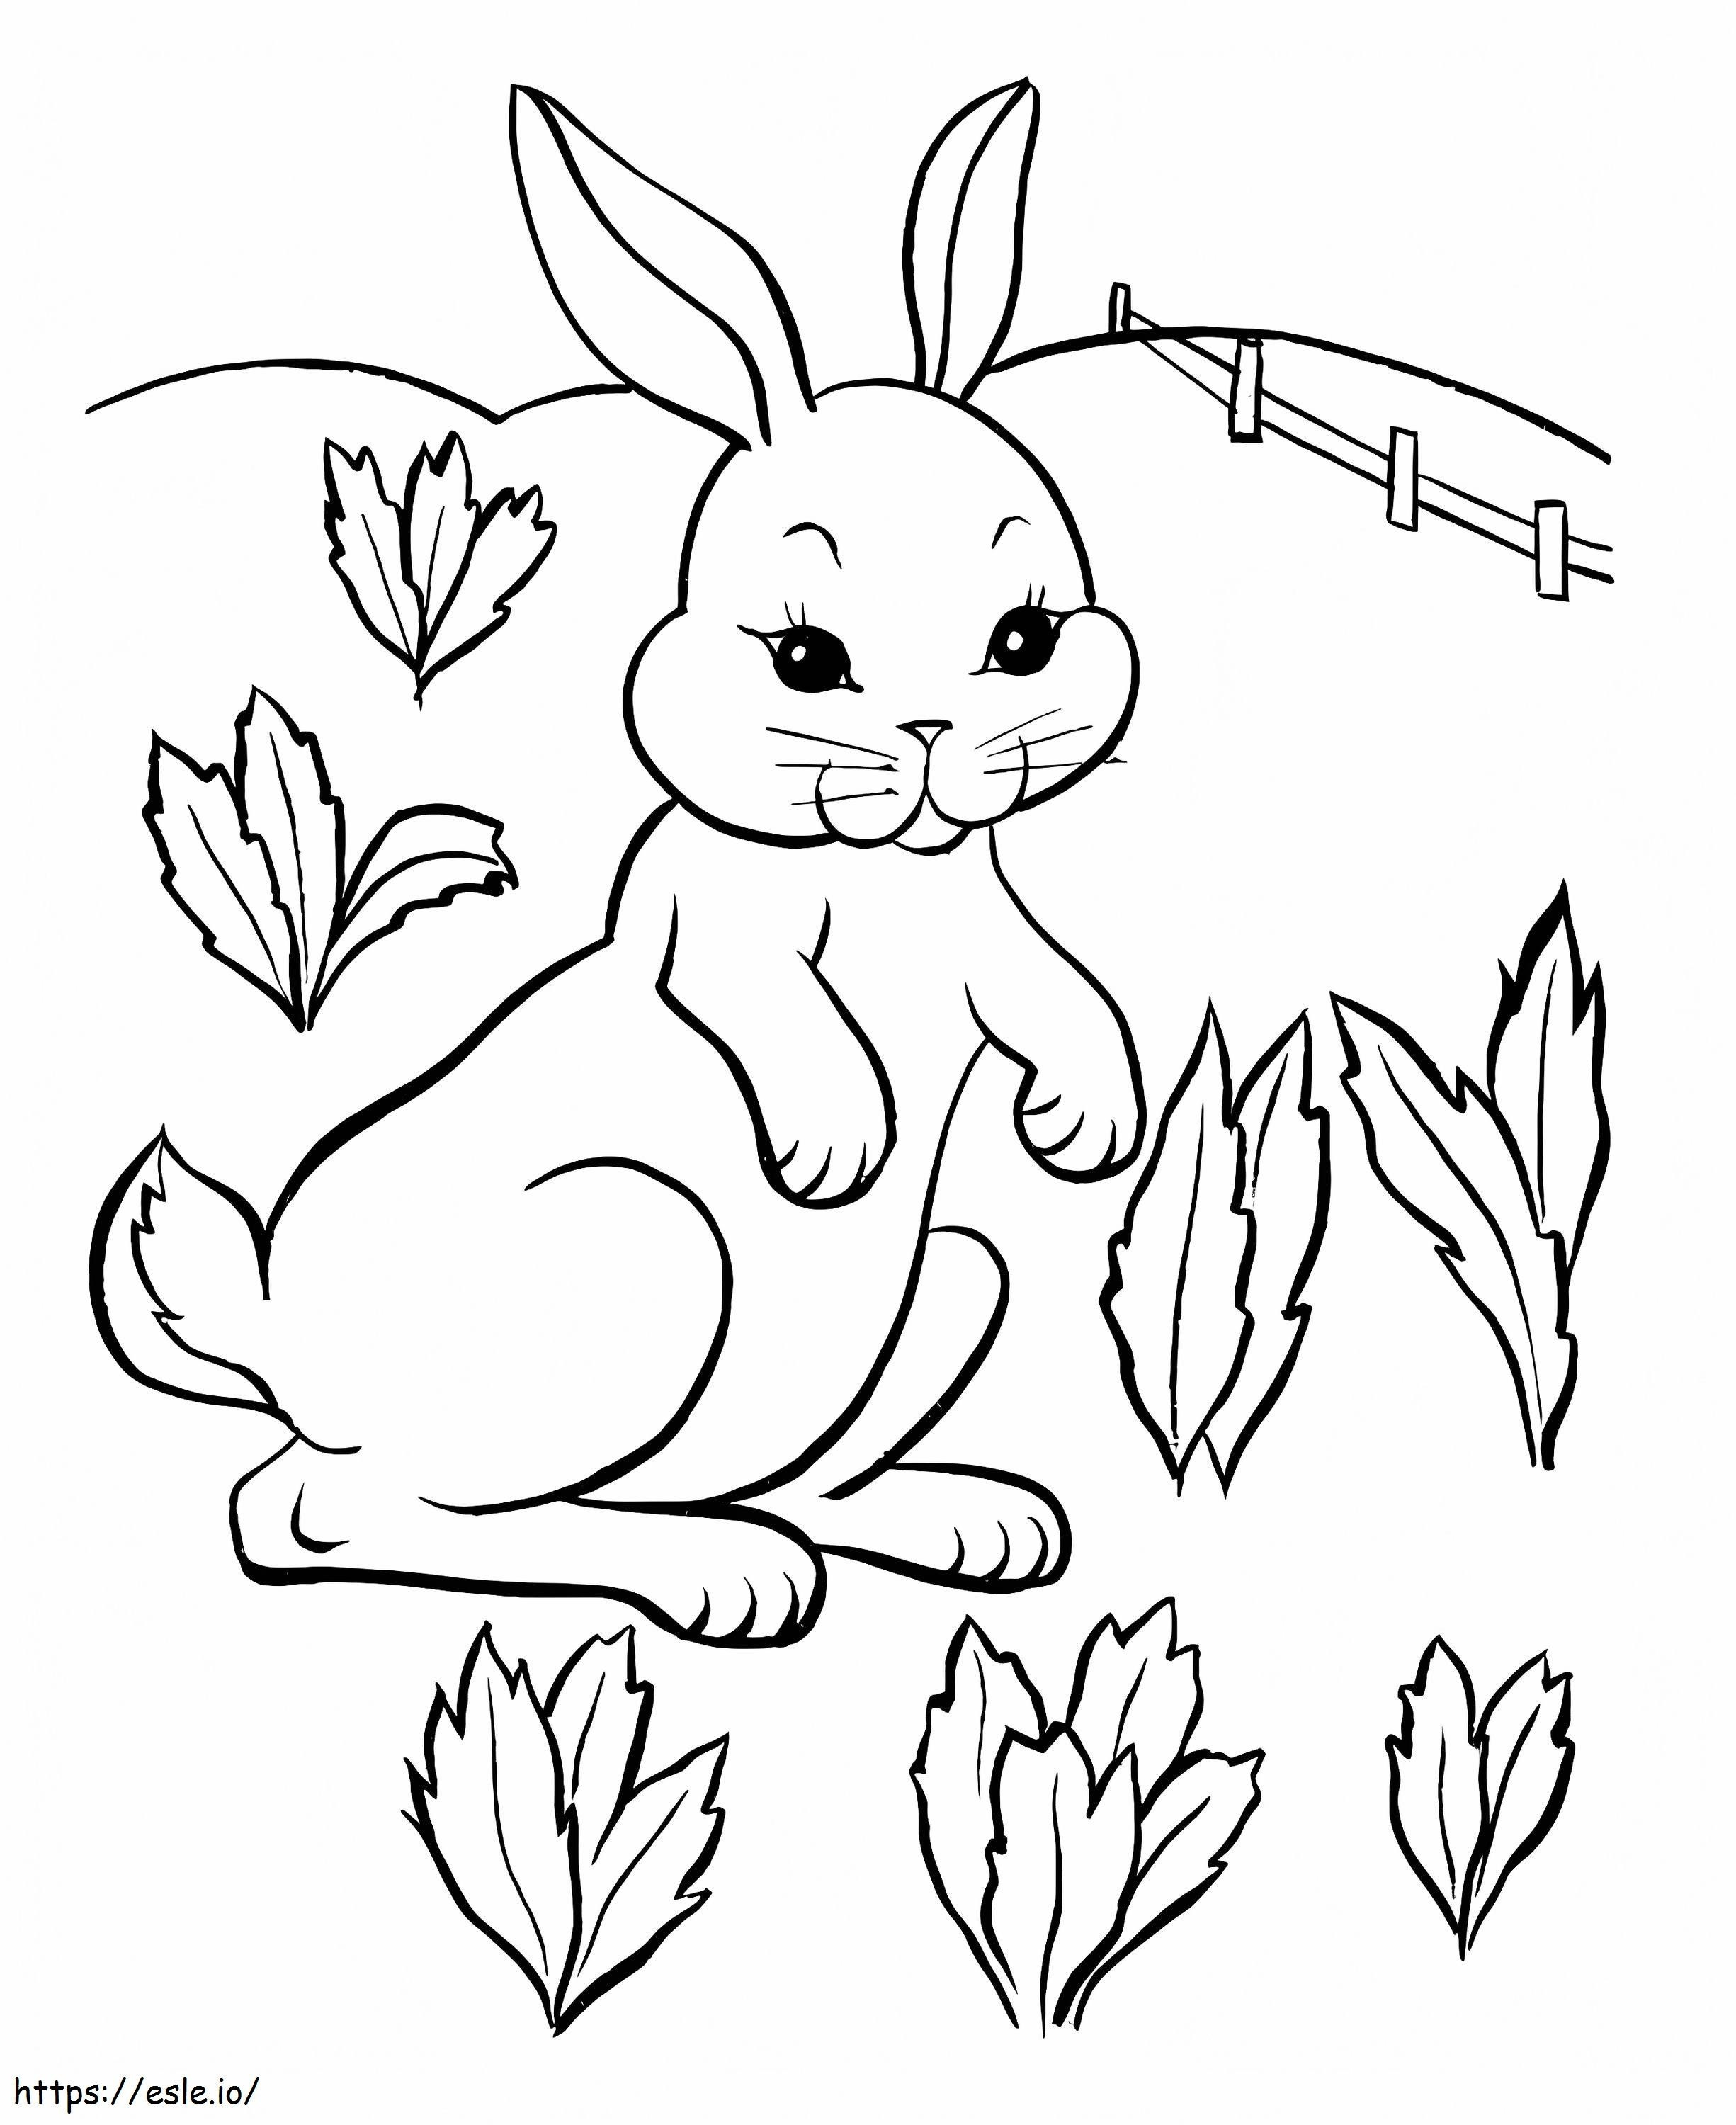 Bahçedeki Tavşan boyama